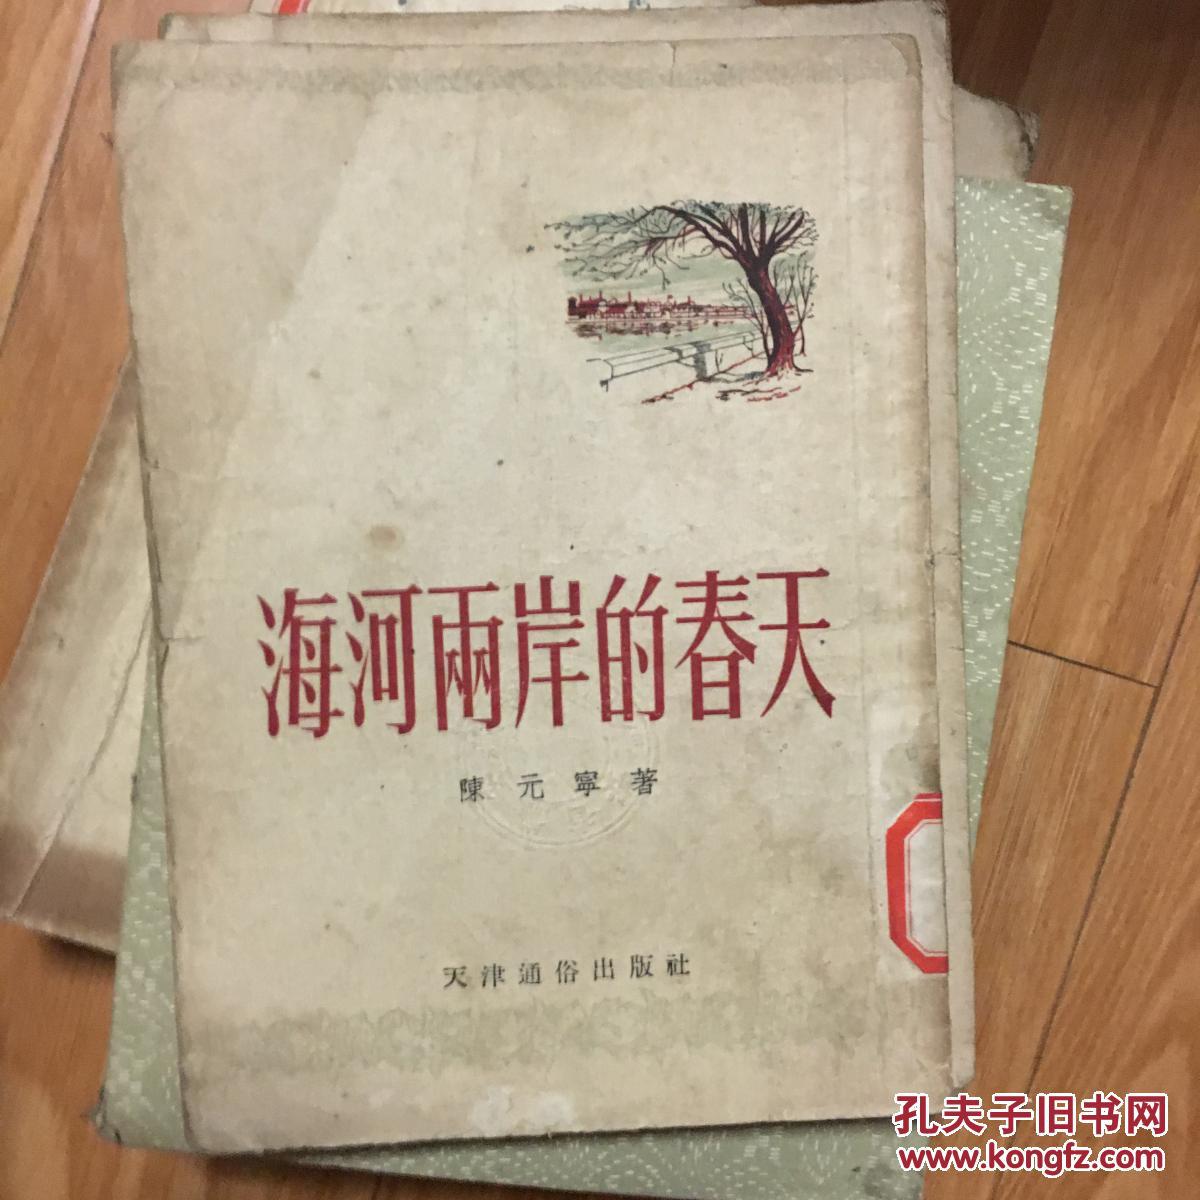 《海河两岸的春天》王治华精美插图本1953年一版一印 描写贯彻婚姻法的长篇故事，安庆图书馆藏书！